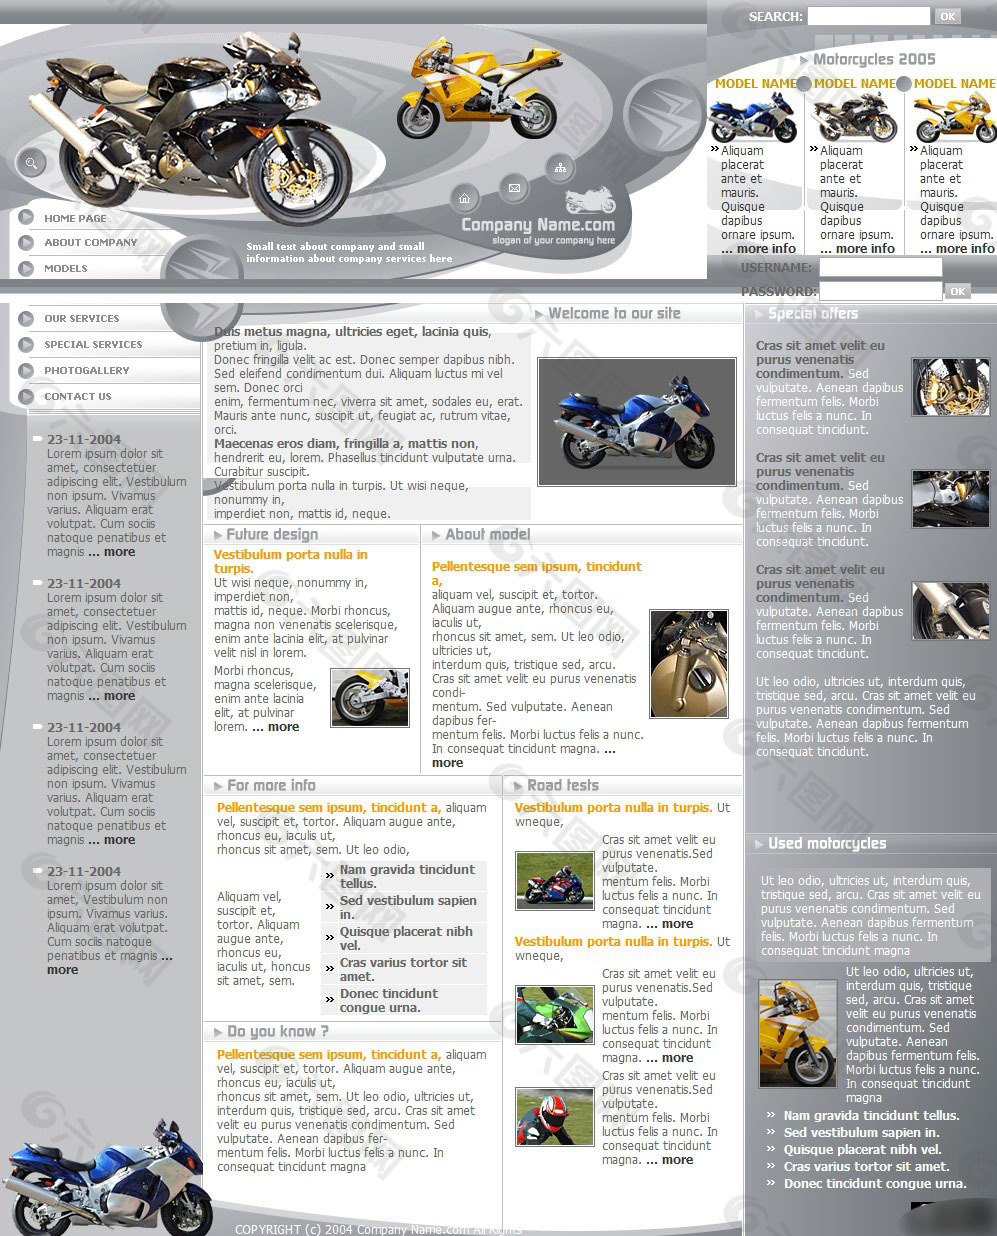 摩托车展示网页设计